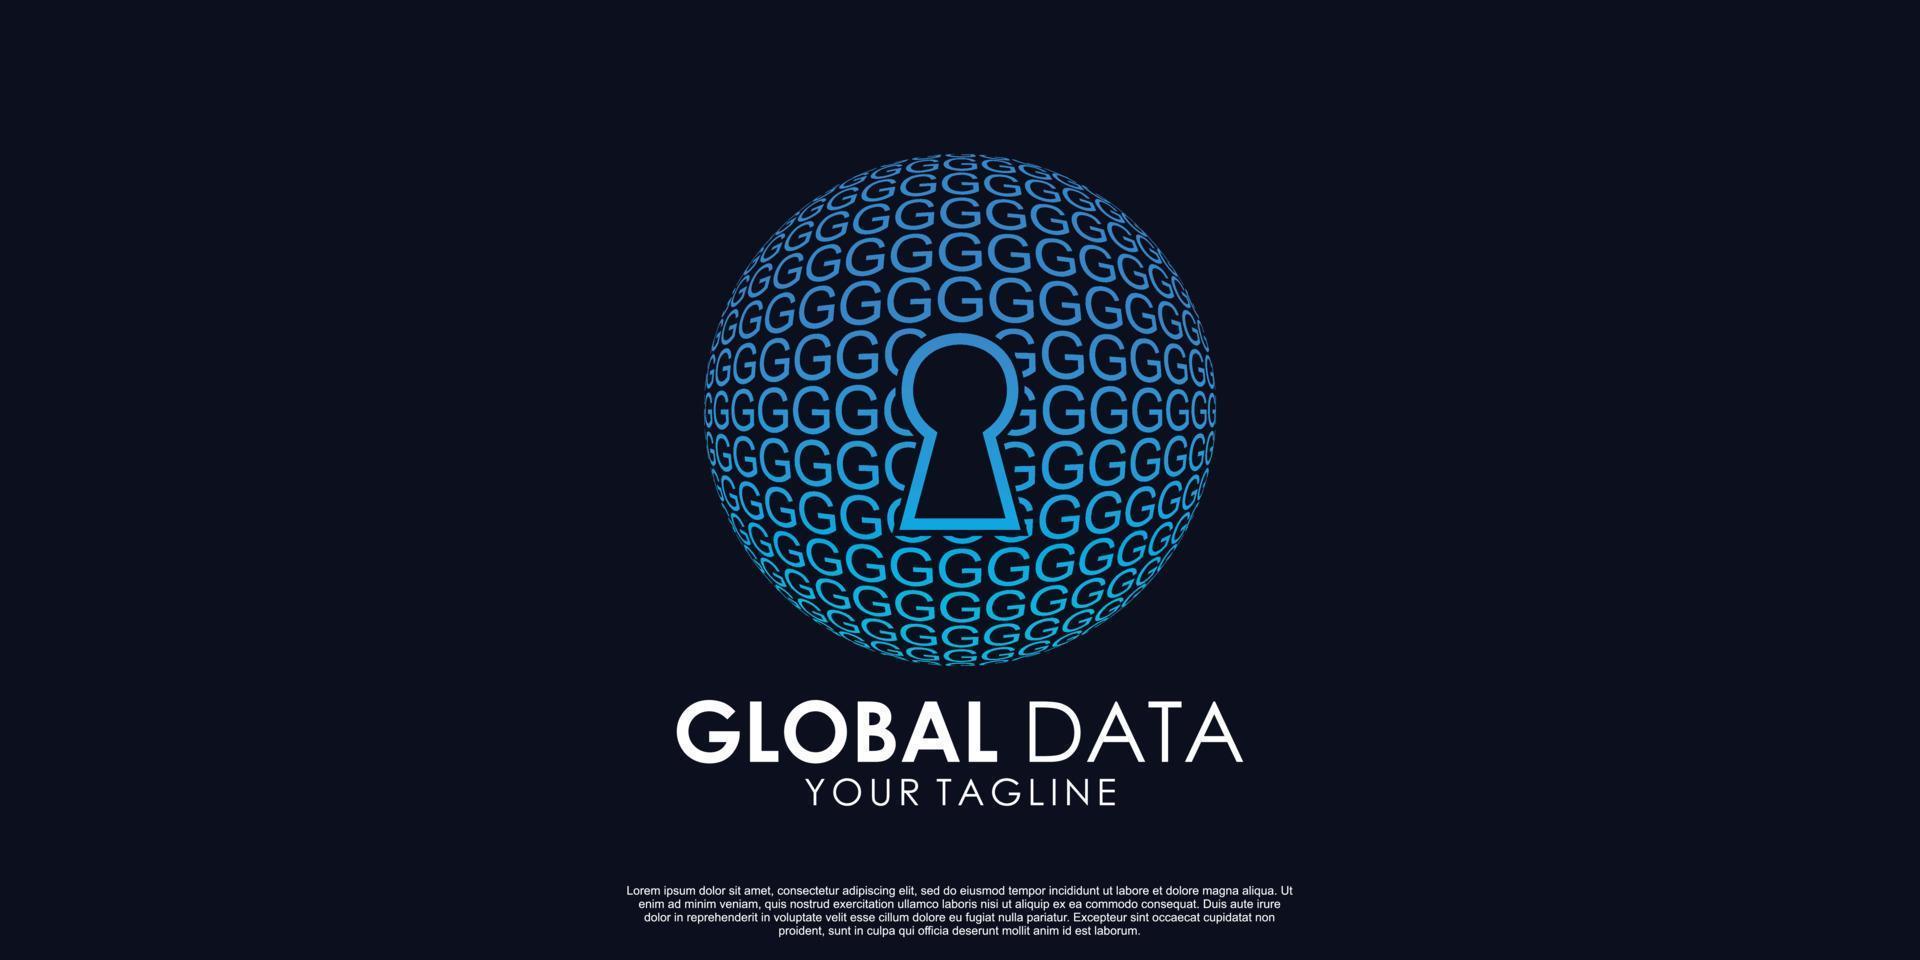 globale dati logo design premio vettore